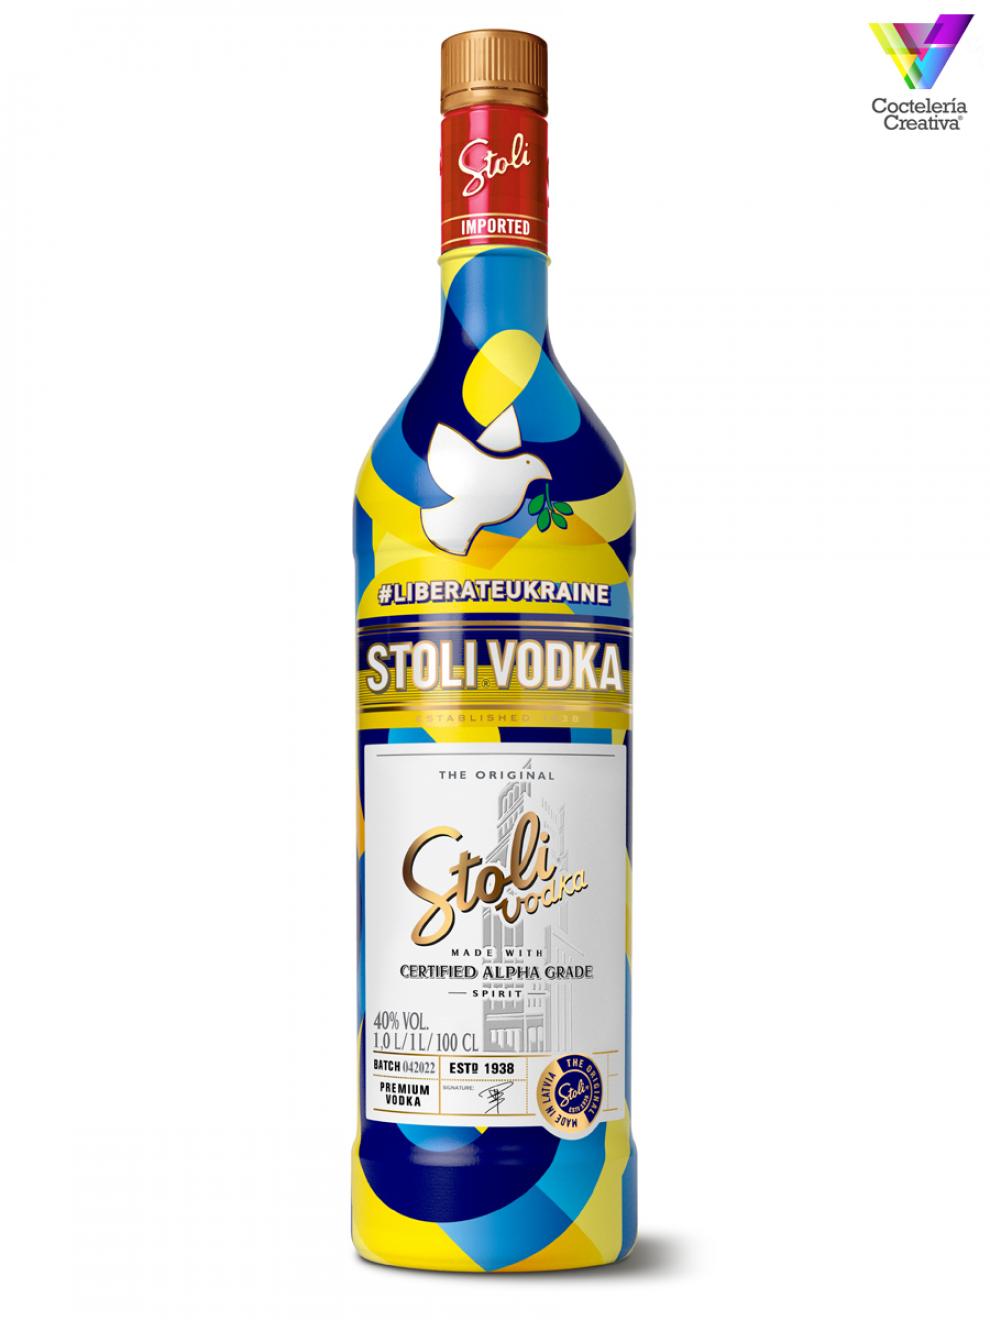 Botella Edición Limitada de Stoli con los colores de la bandera ucraniana